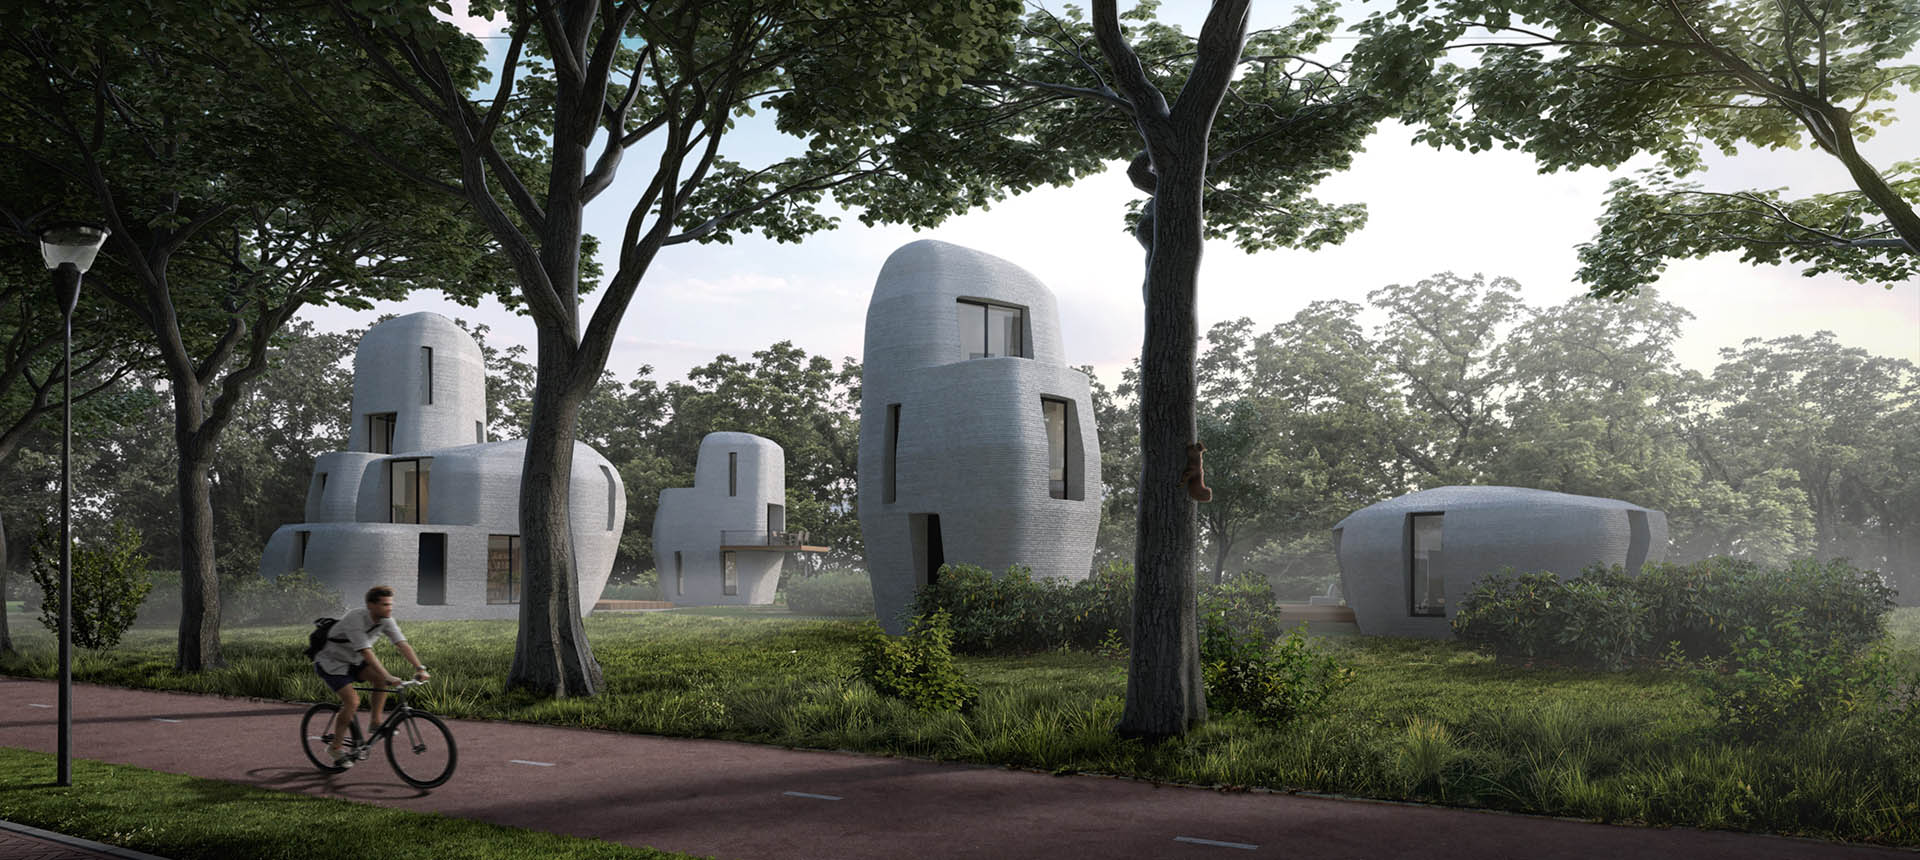 Dünyanın ilk 3D baskı beton evleri